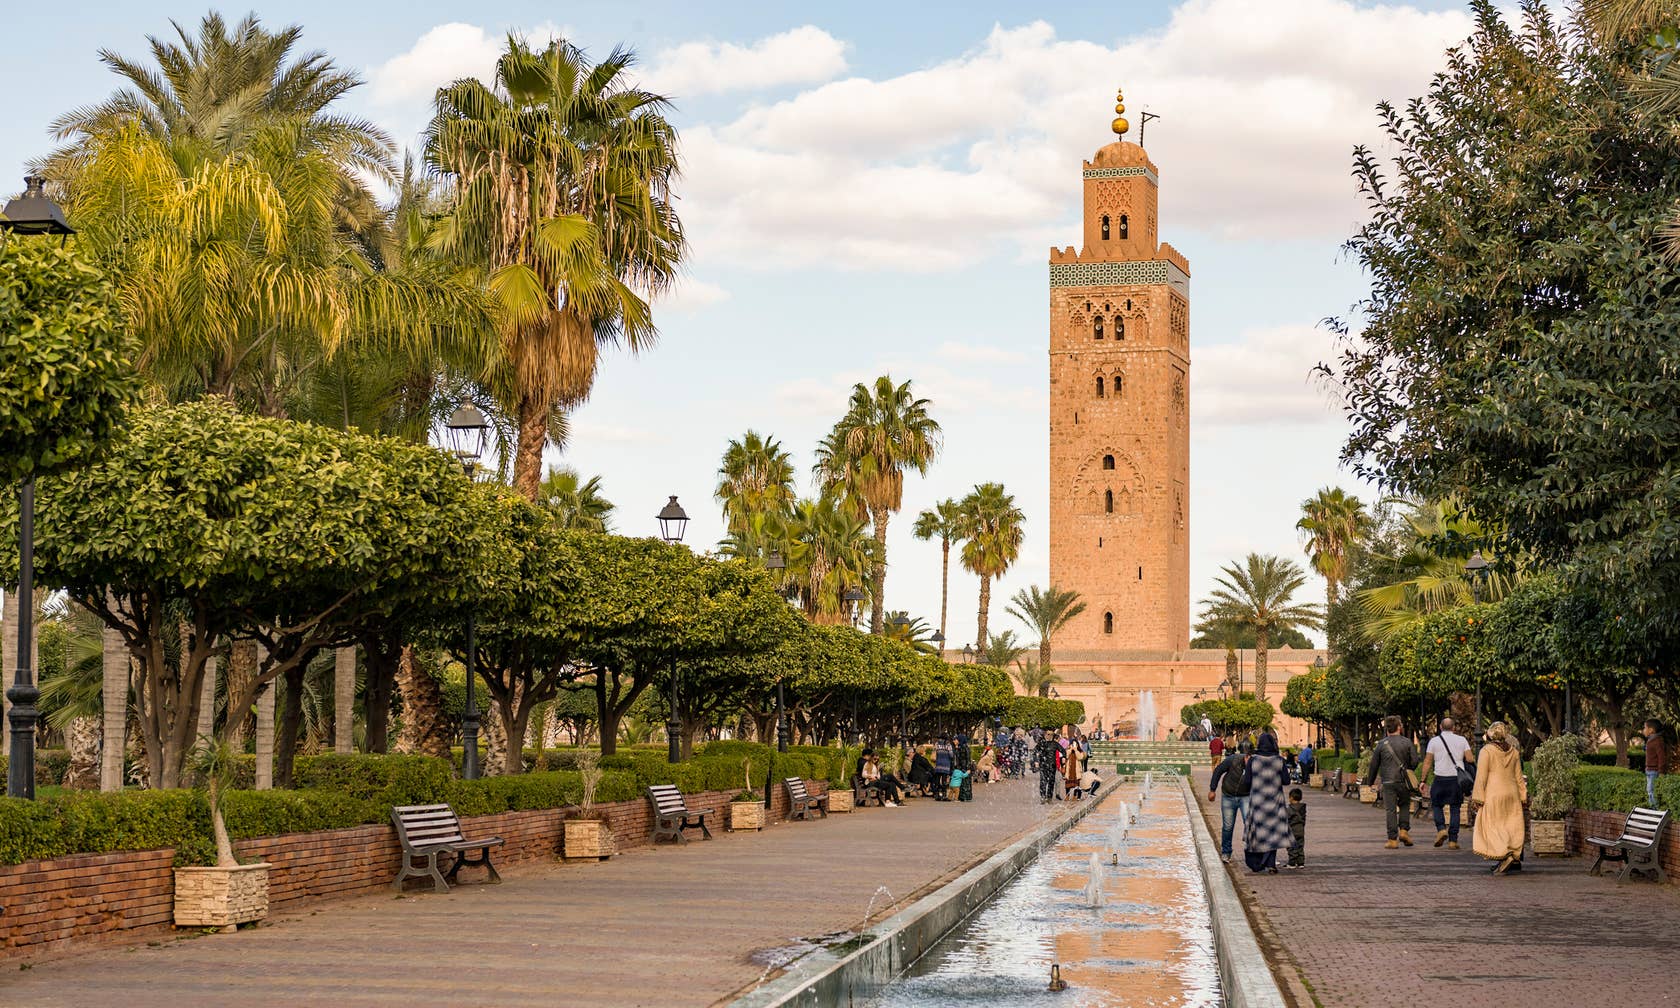 Kirjiet għall-vaganzi ġewwa il-Marokk